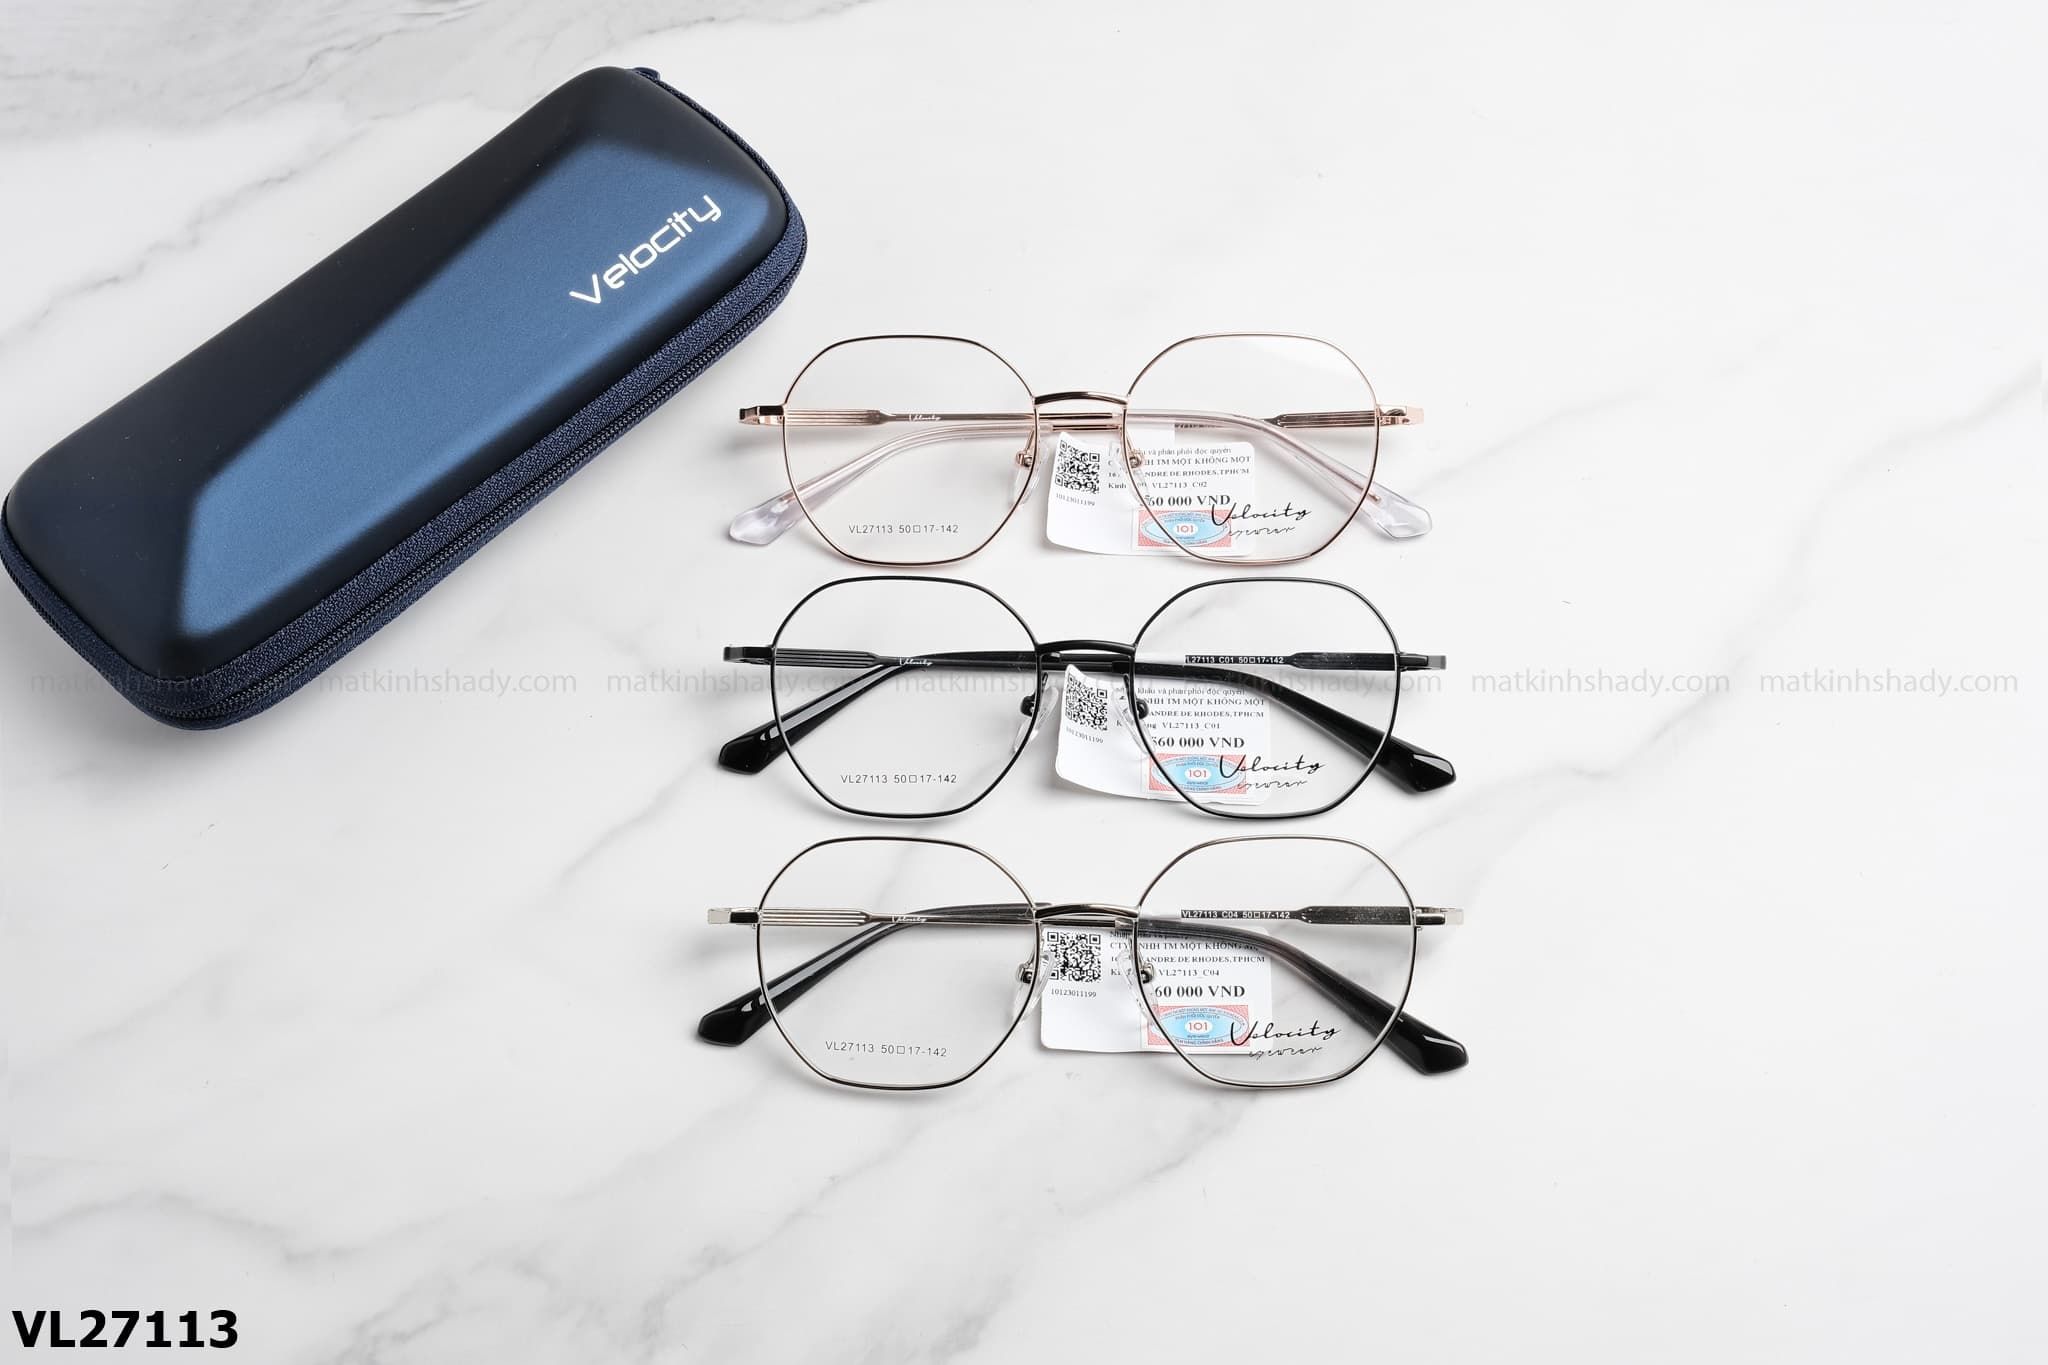  Velocity Eyewear - Glasses - VL27113 